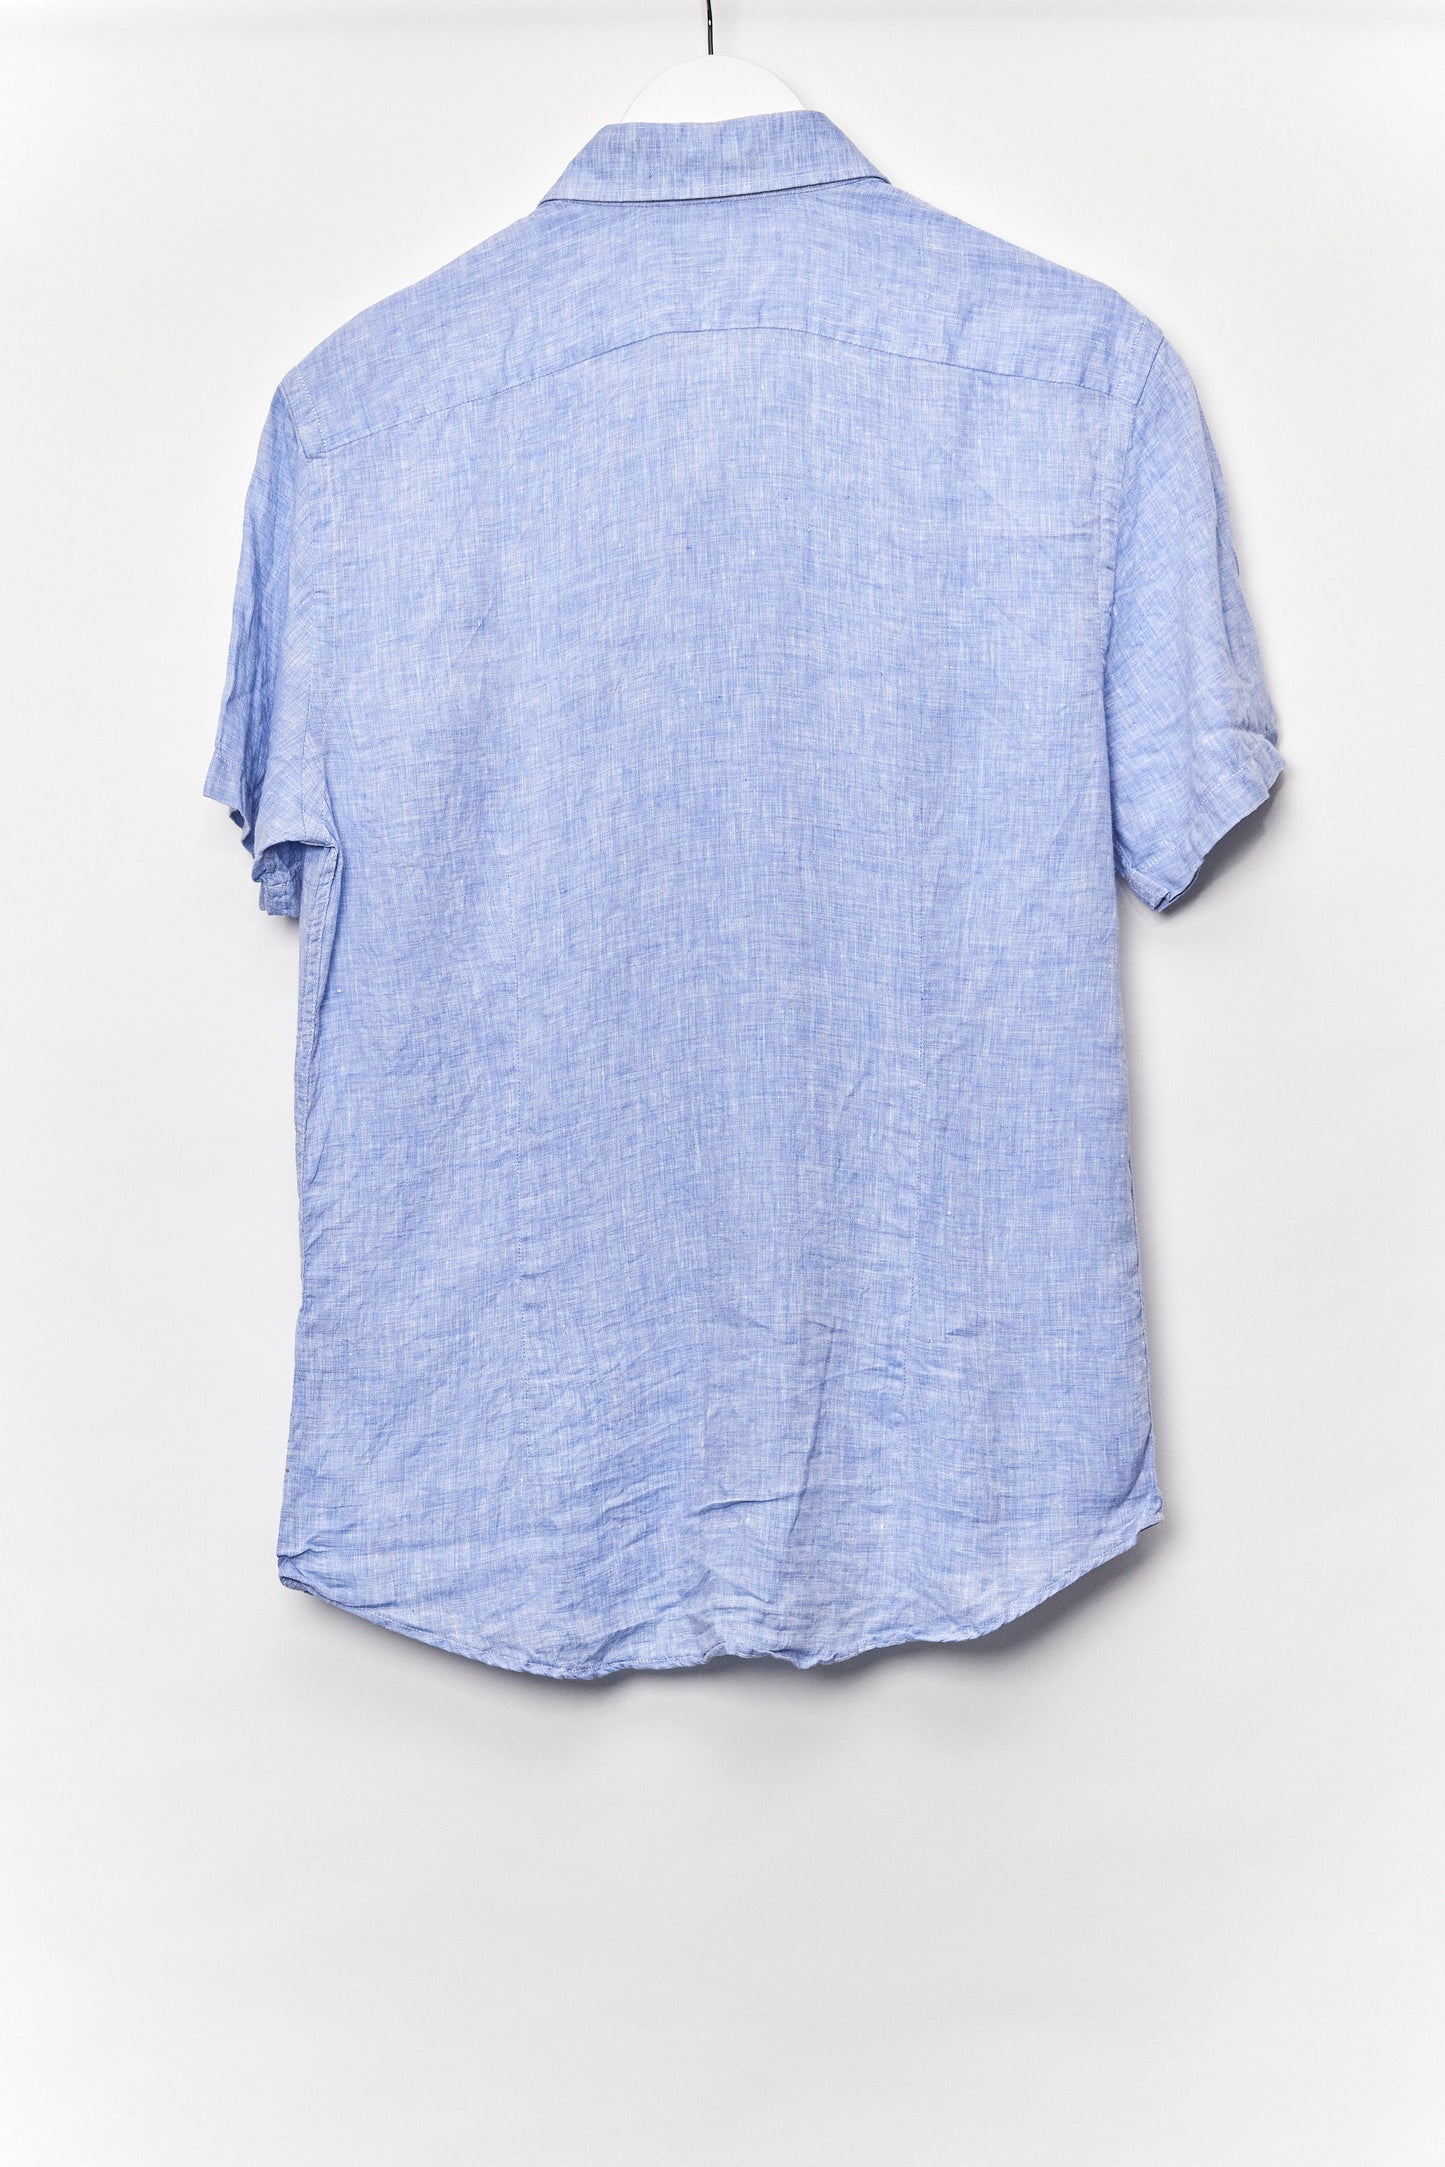 Mens Reiss Blue Linen Short Sleeve Shirt Size Medium